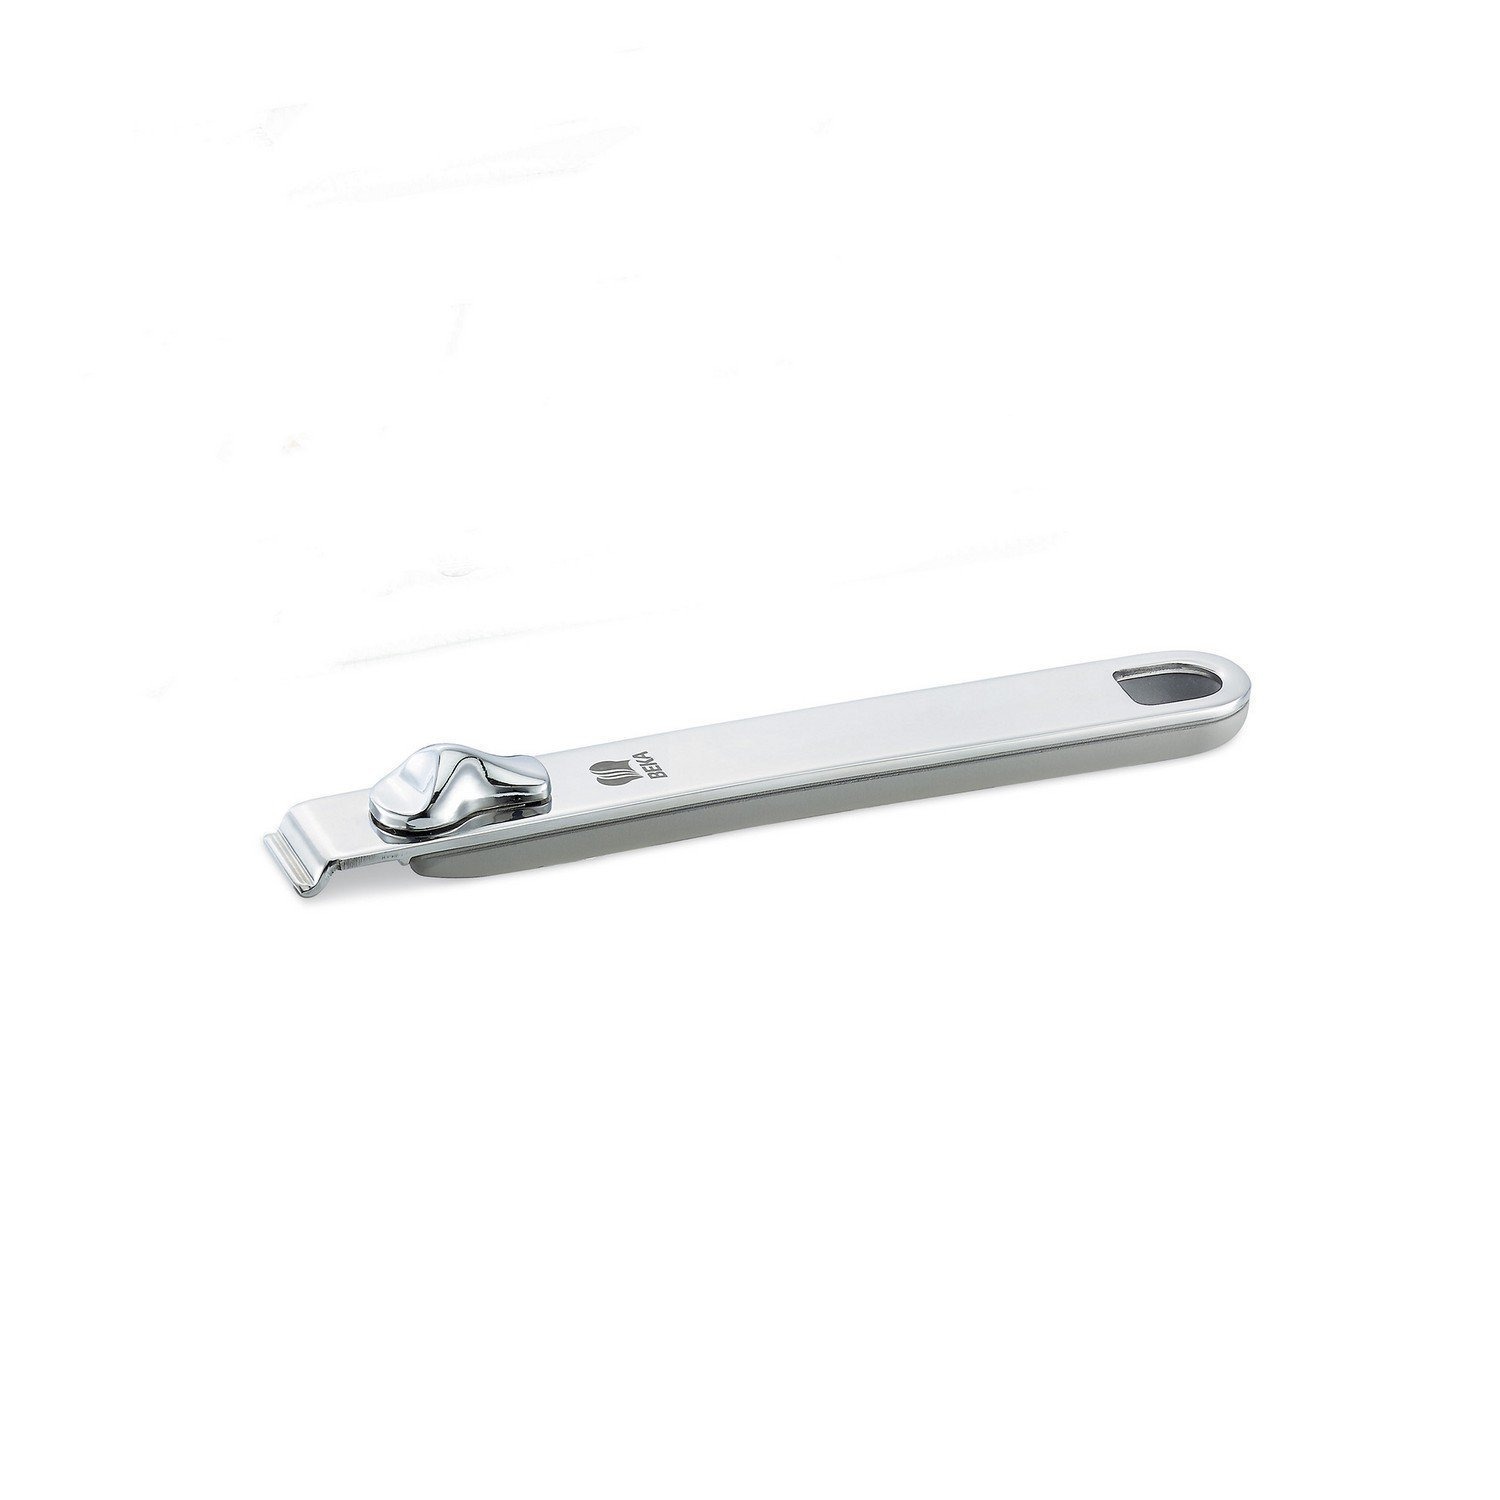 Ручка съемная длинная Beka select серая 18,5 см длинная усиленная ручка для крана mpf